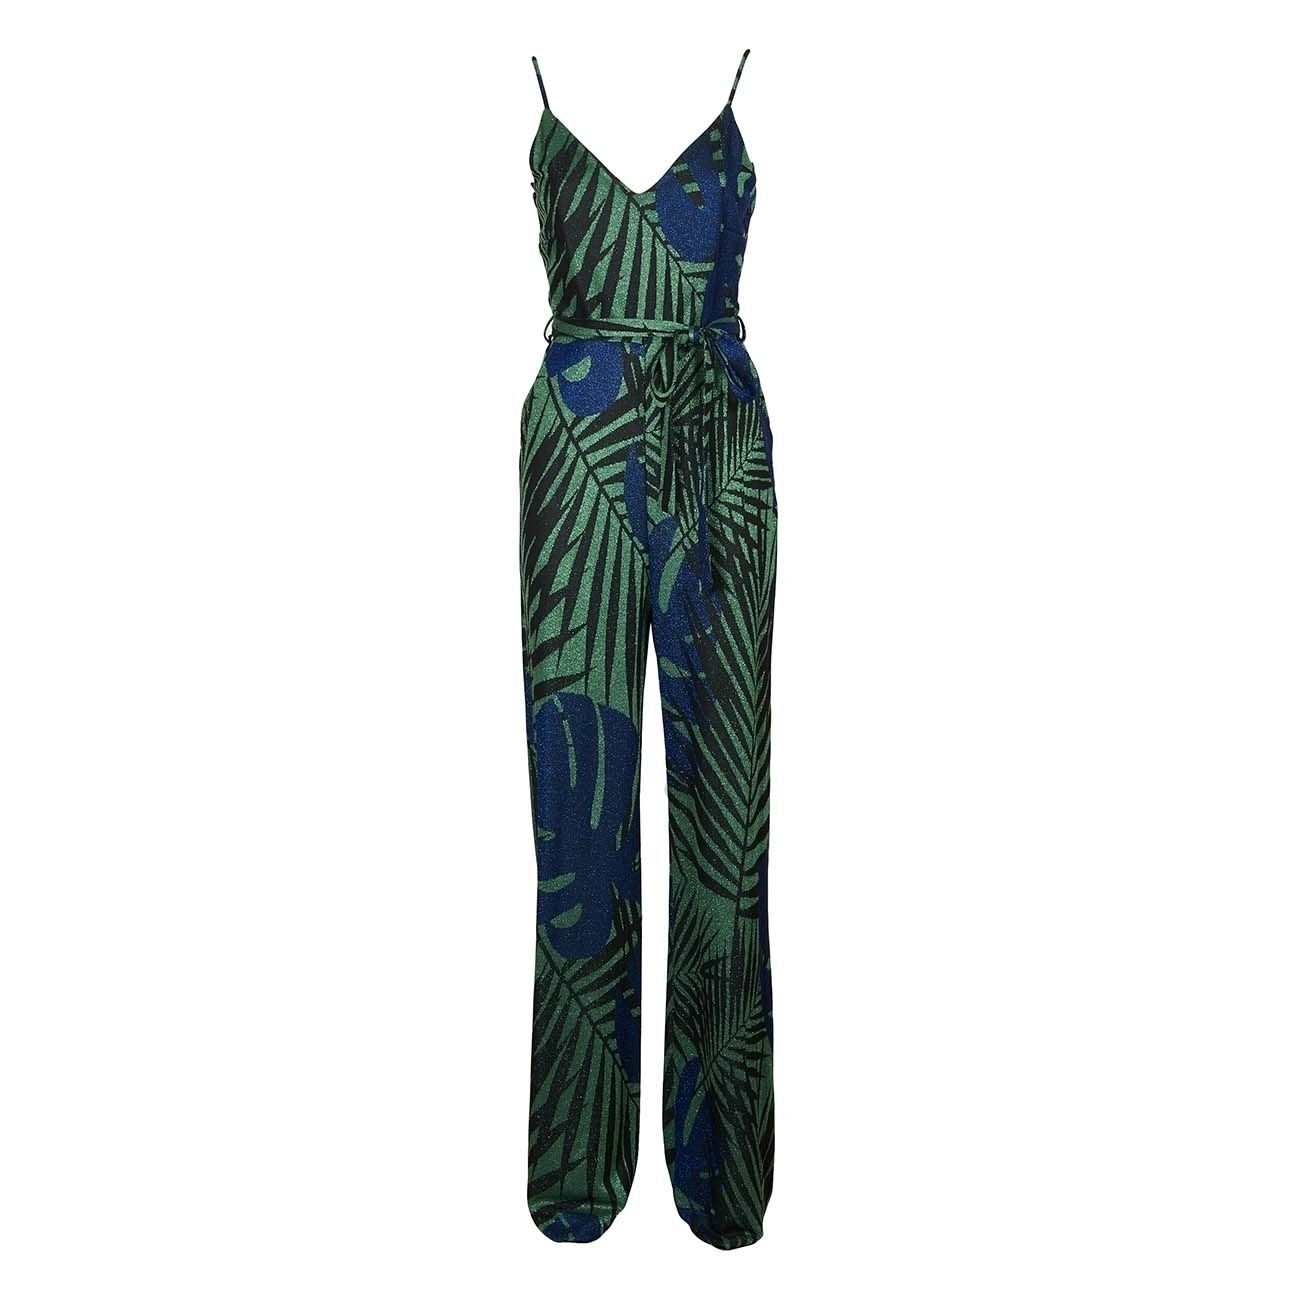 Pence doorgaan met zeker KOCCA LUREX JUMPSUIT Woman Green black blue | Mascheroni Sportswear